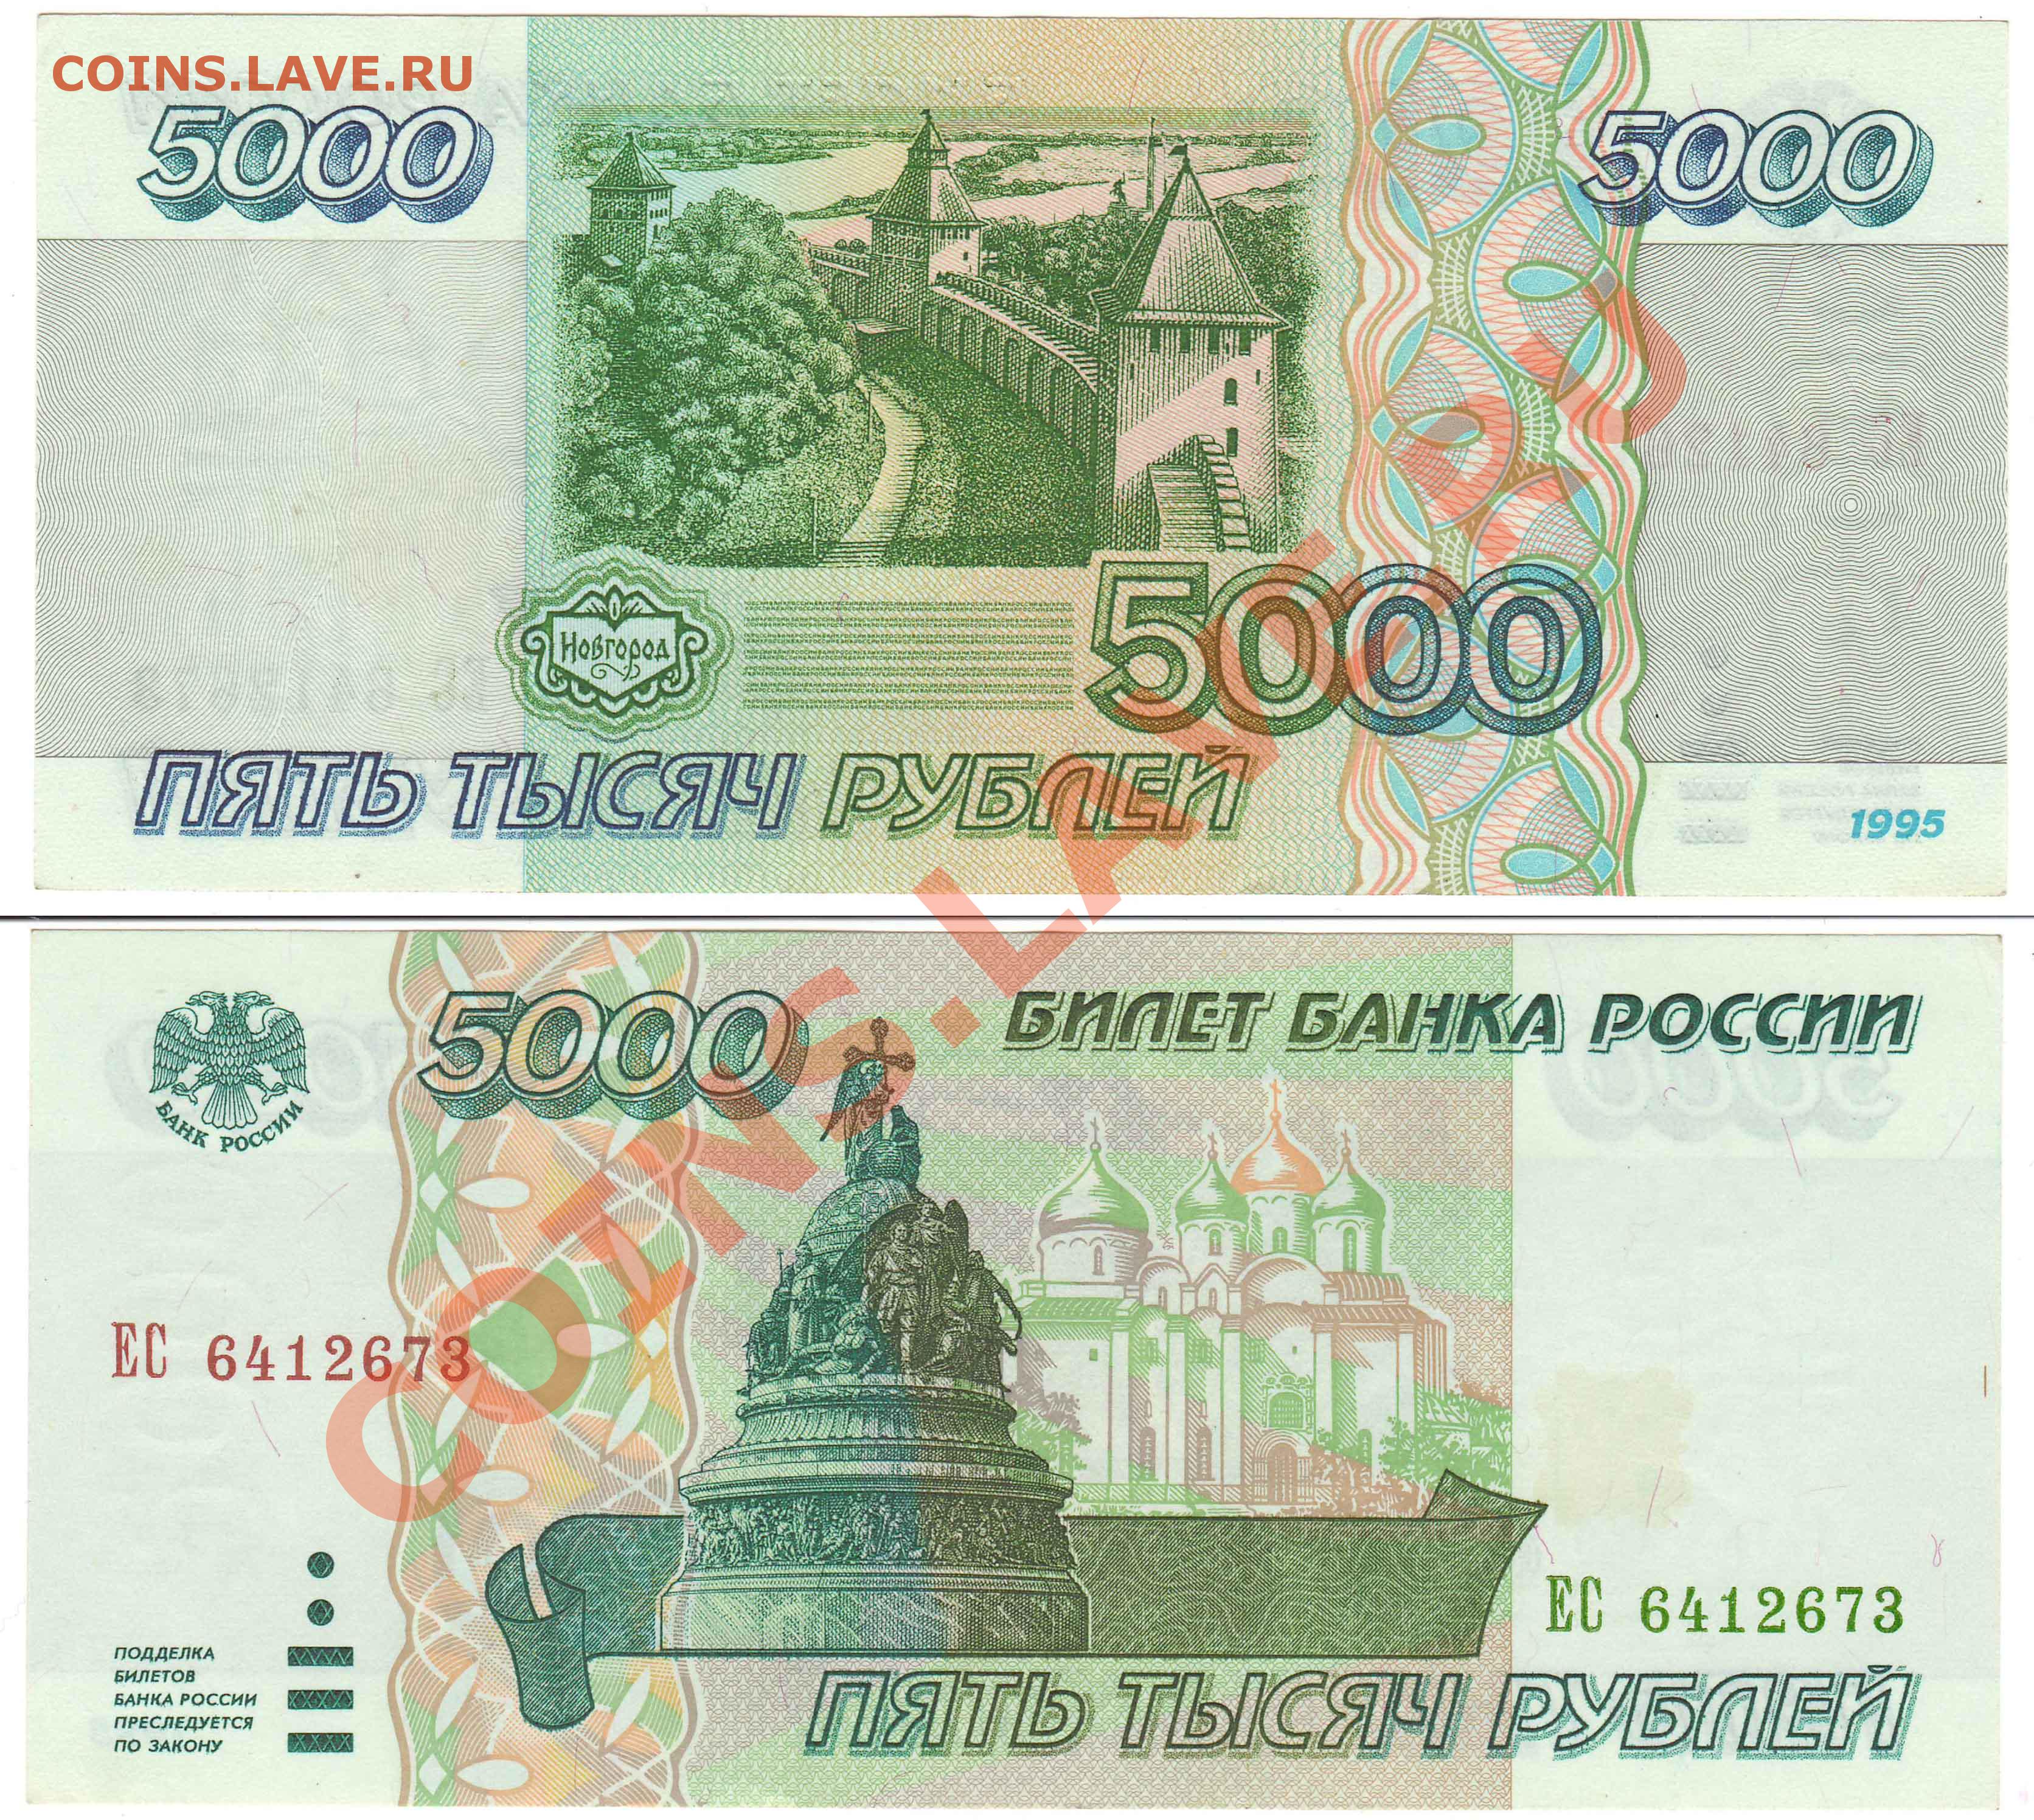 5 тыс рублей новая. 5000 Рублей купюра 1995. Банкнота 5000 рублей 1995. Банкнота 5000 рублей 1995 года. Деньги 1995 года в России.